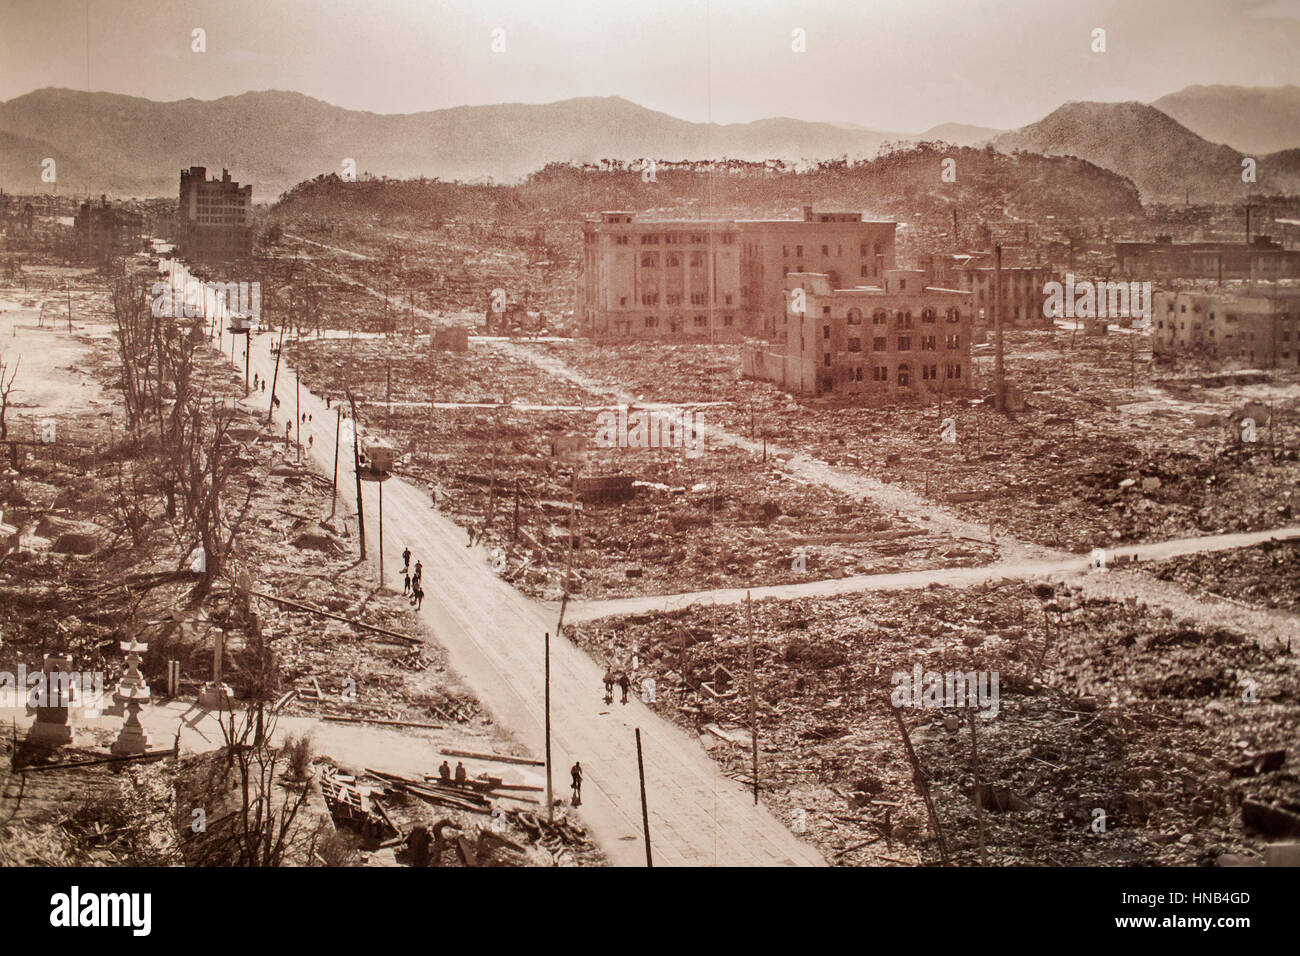 photo of Hiroshima after the atomic bomb explosion, Hiroshima Peace Memorial Museum, Hiroshima, Japan Stock Photo